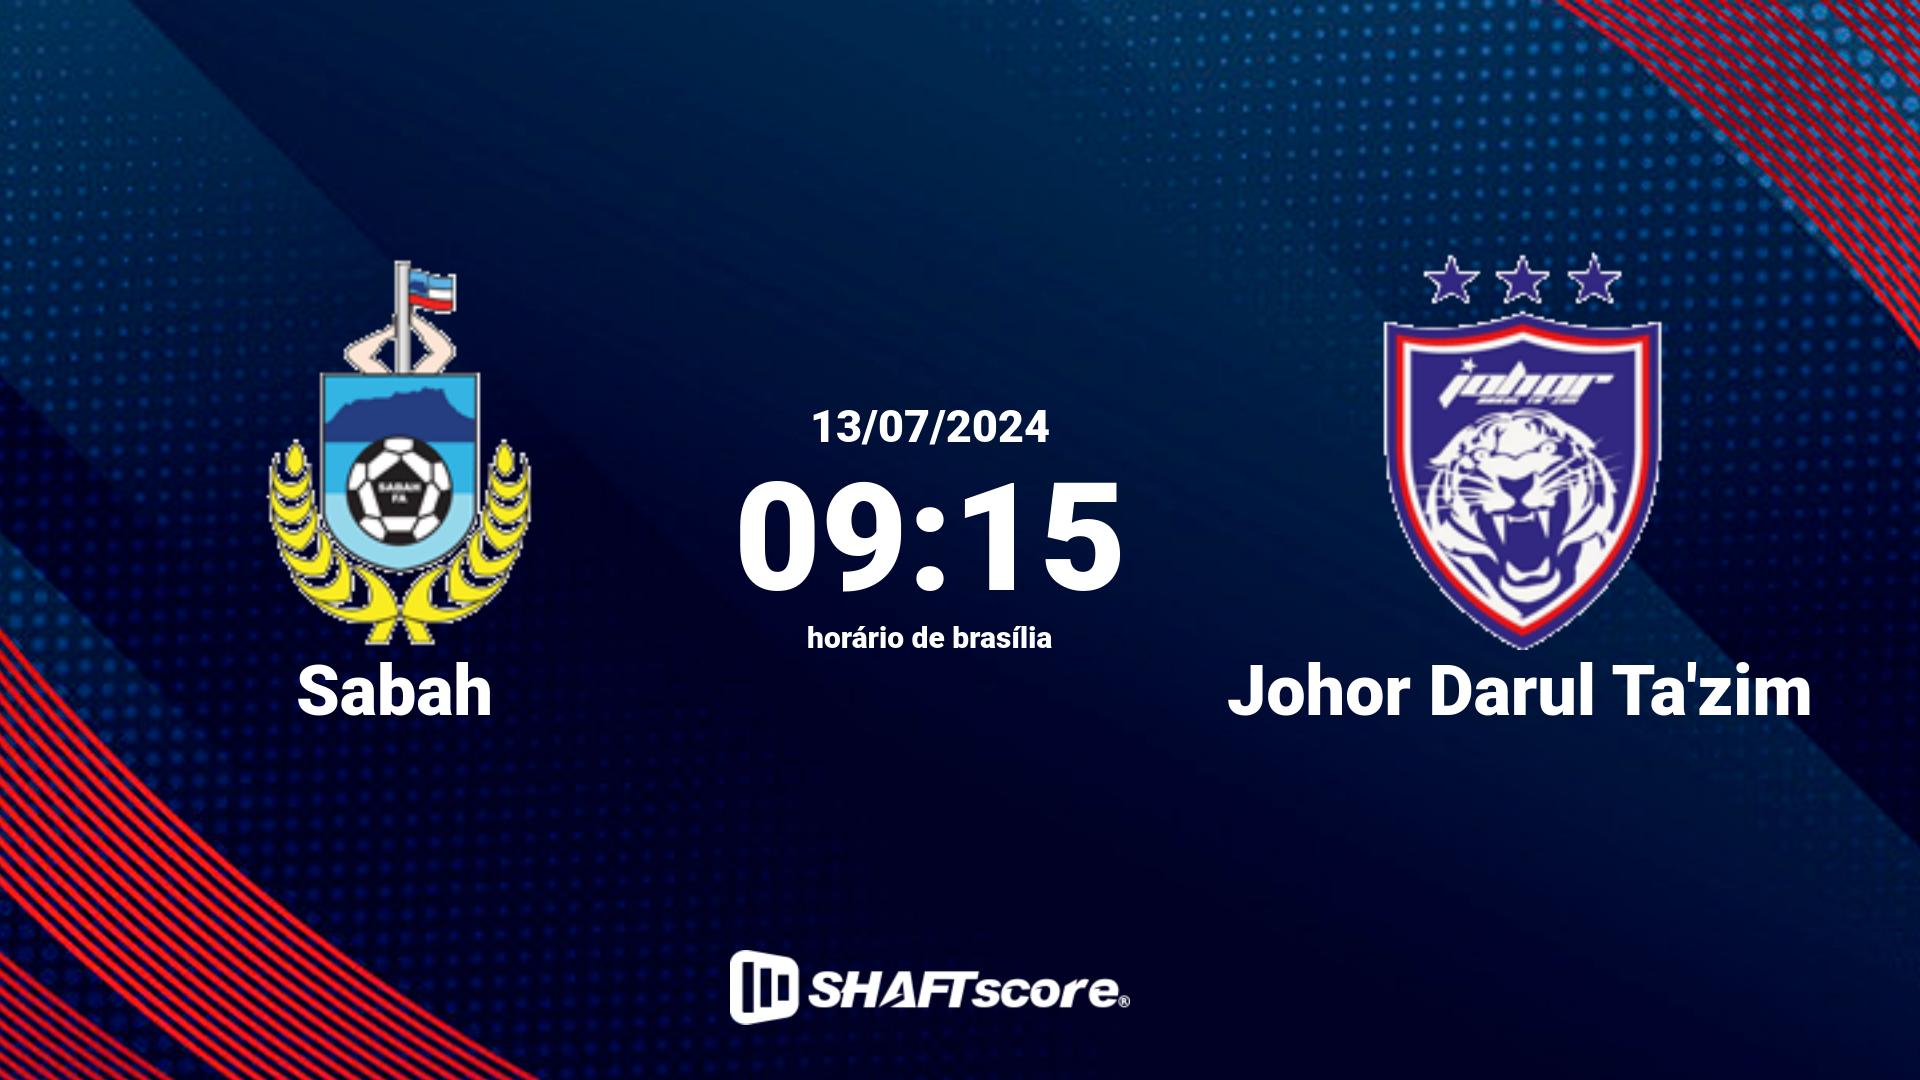 Estatísticas do jogo Sabah vs Johor Darul Ta'zim 13.07 09:15